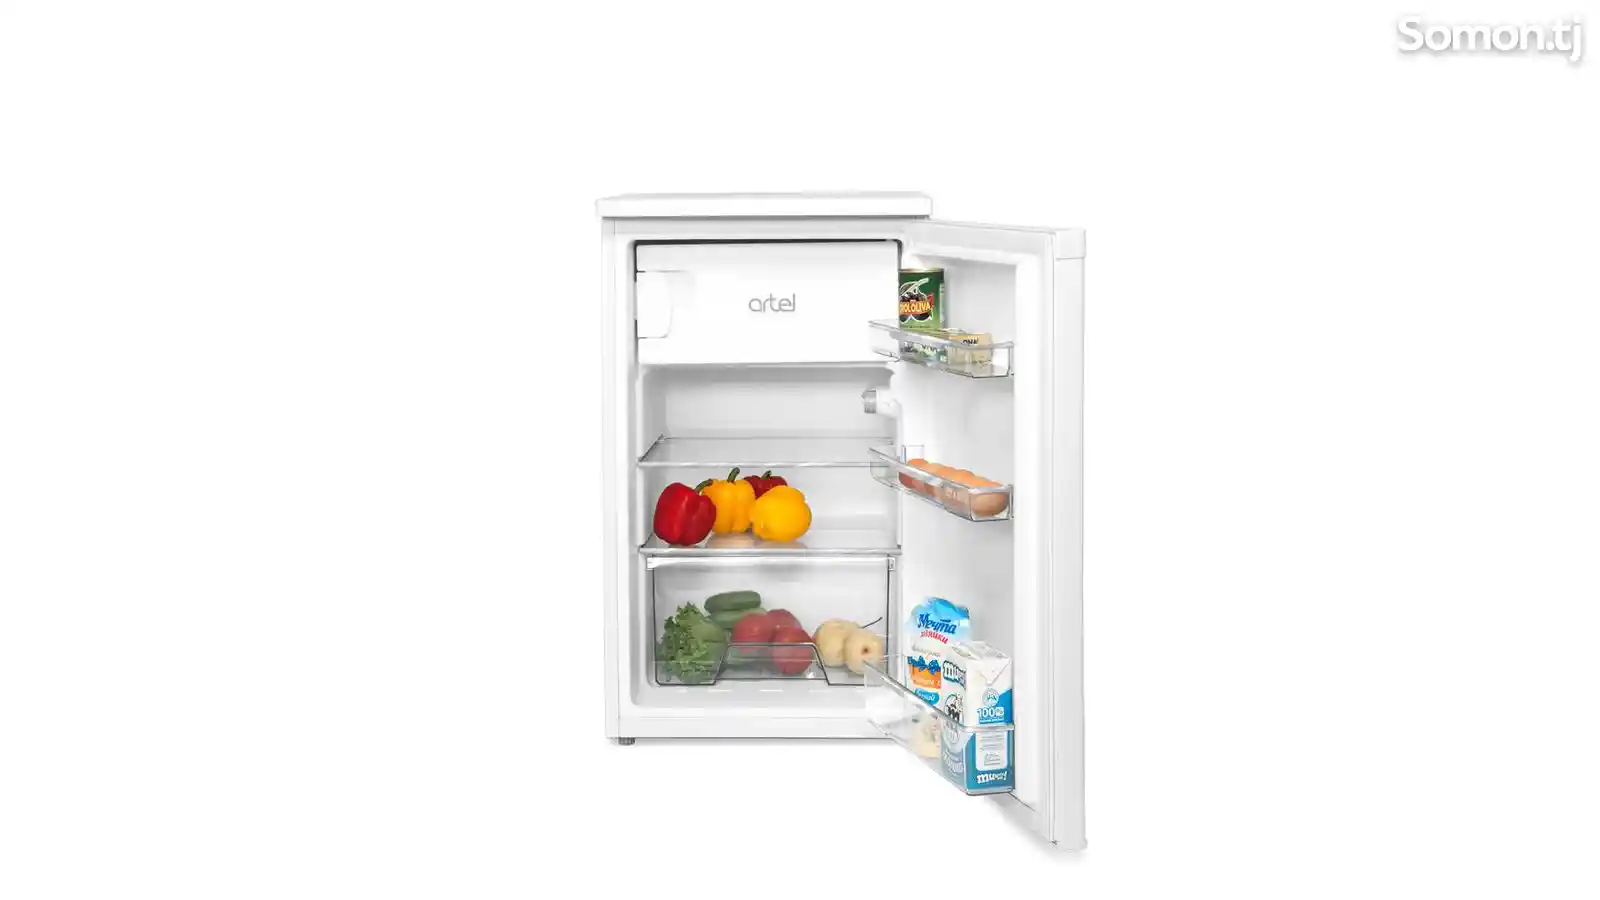 Однокамерный холодильник Artel Hs 137Rn-1